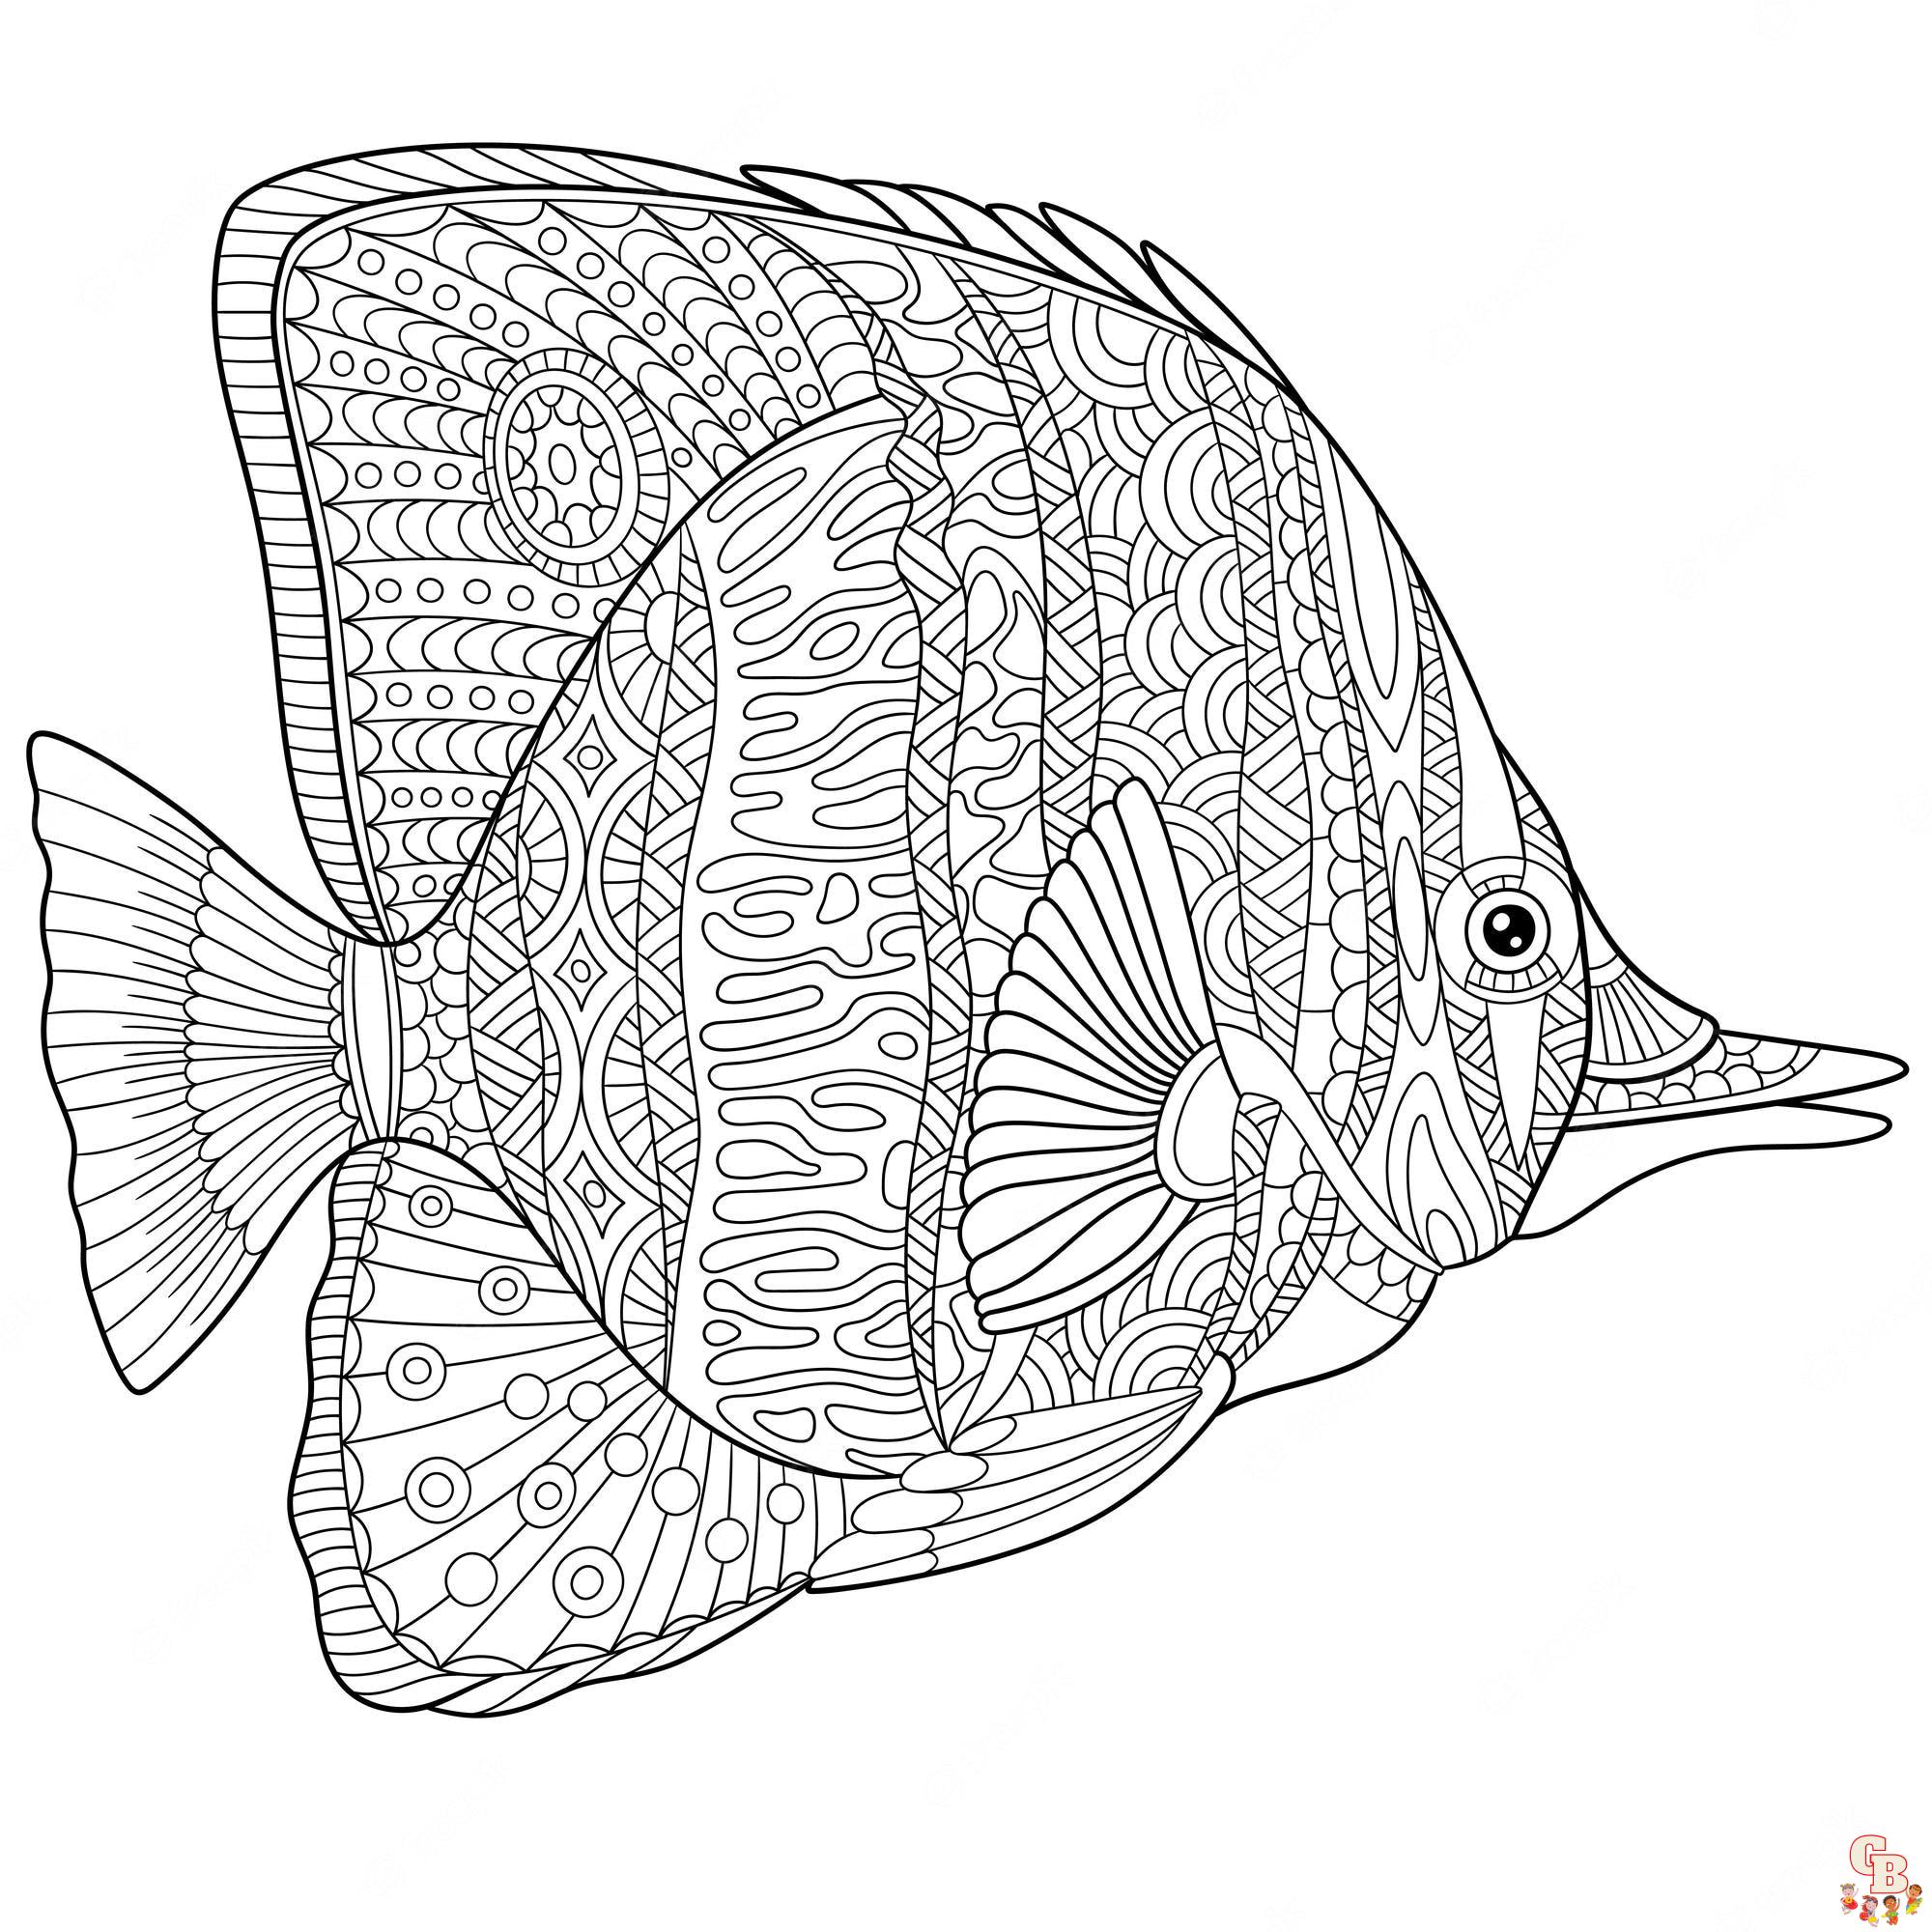 Falterfisch ausmalbilder zum ausdrucken